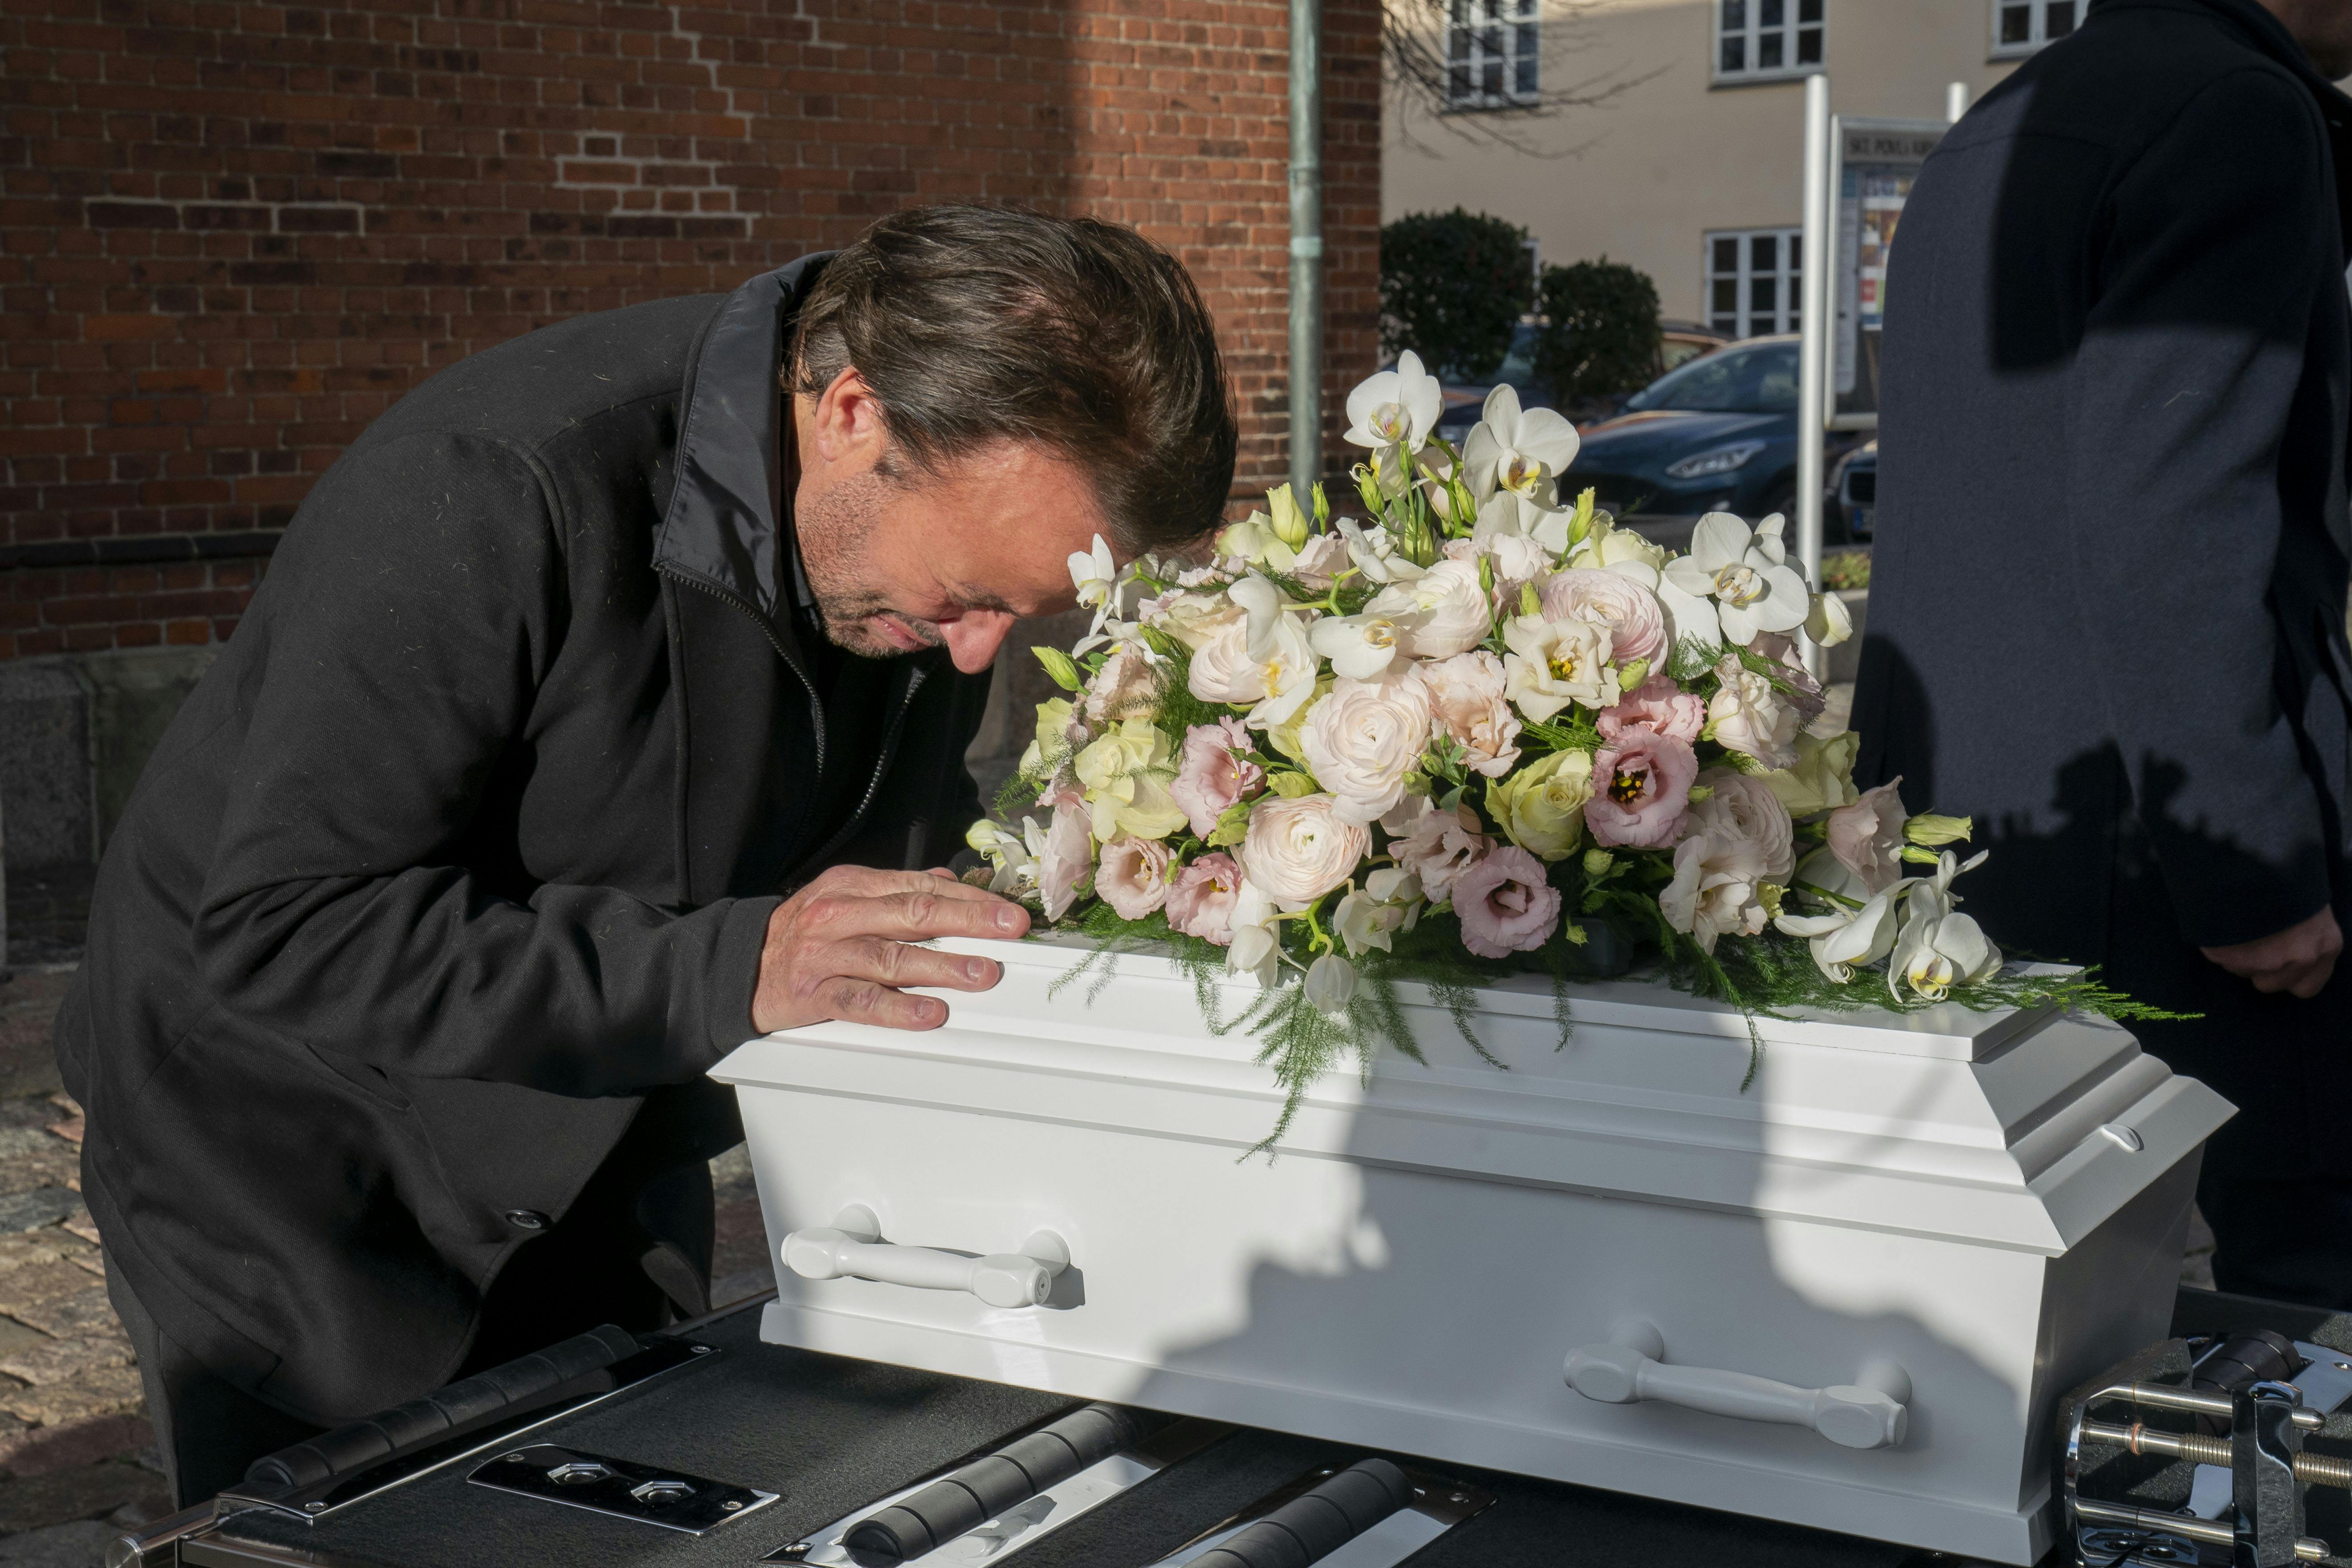 Dennis Knudsens datter Naomi blev på smukkeste vis begravet i Sankt Povls Kirke torsdag. Solen kiggede frem, da Knudsen sagde sit allersidste farvel
